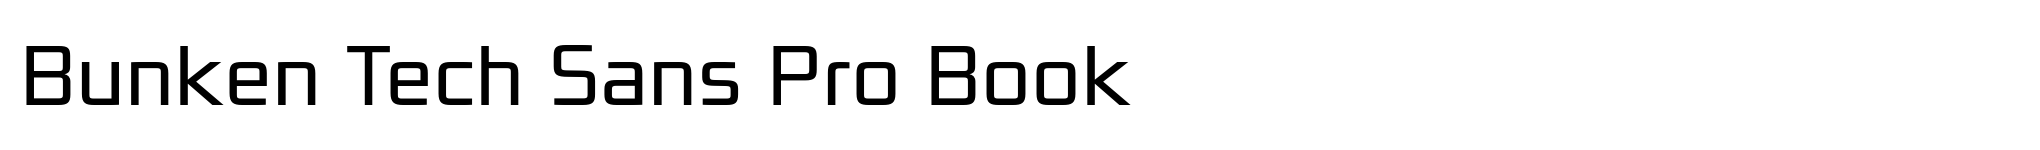 Bunken Tech Sans Pro Book image